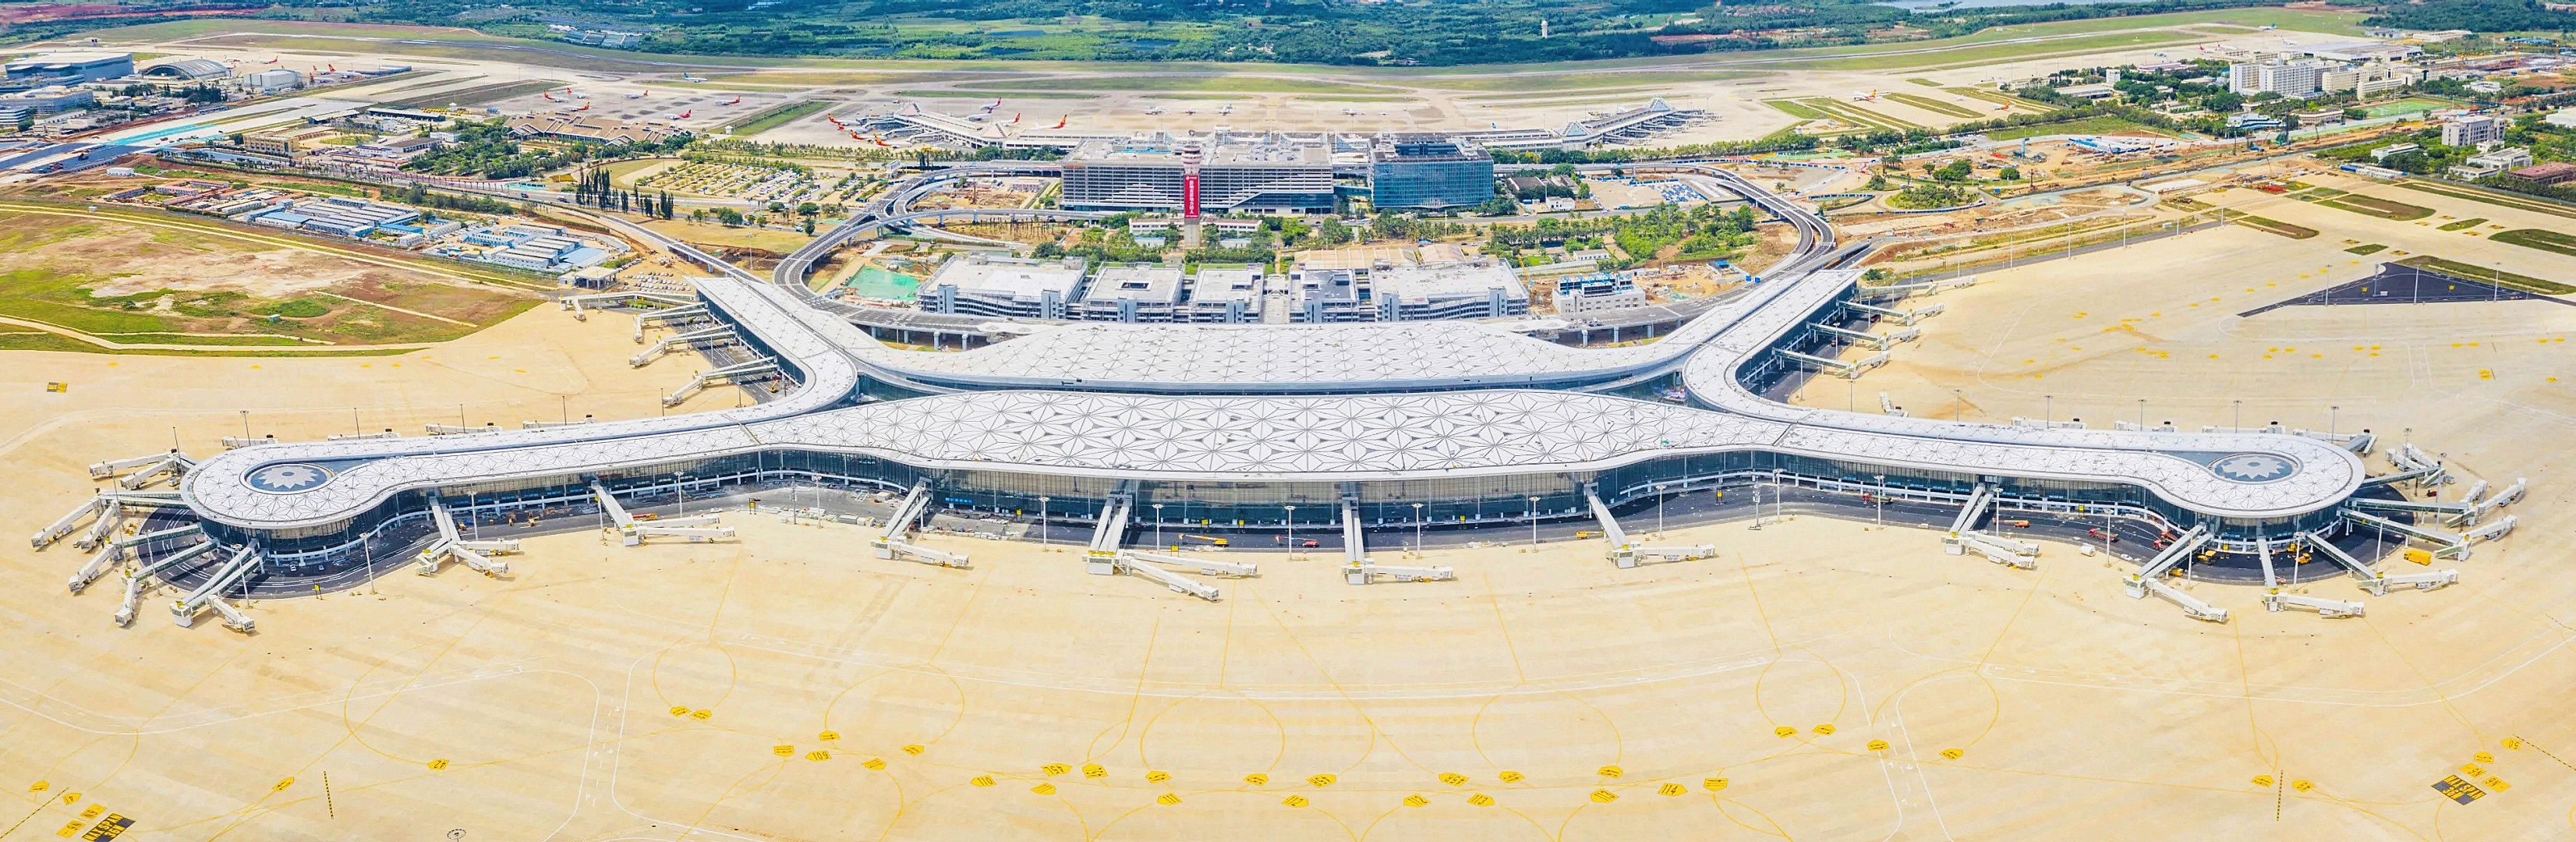 美兰机场二期航站楼项目顺畅竣工